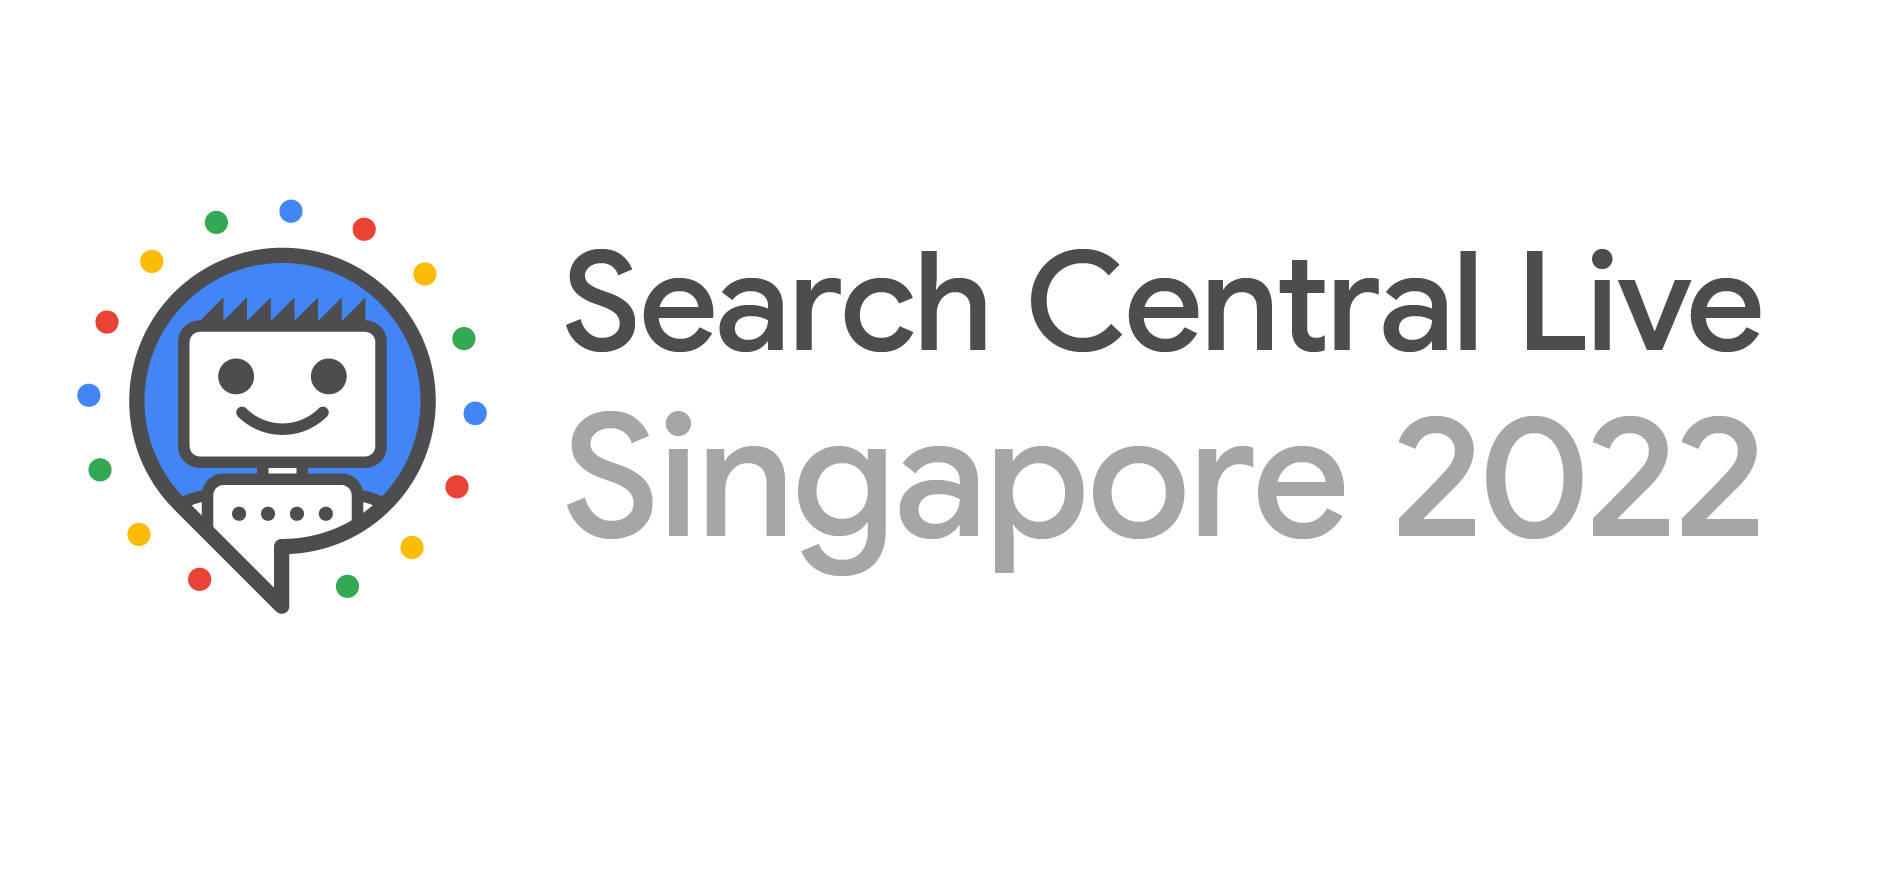 2022년 검색 센터 라이브 싱가포르 로고